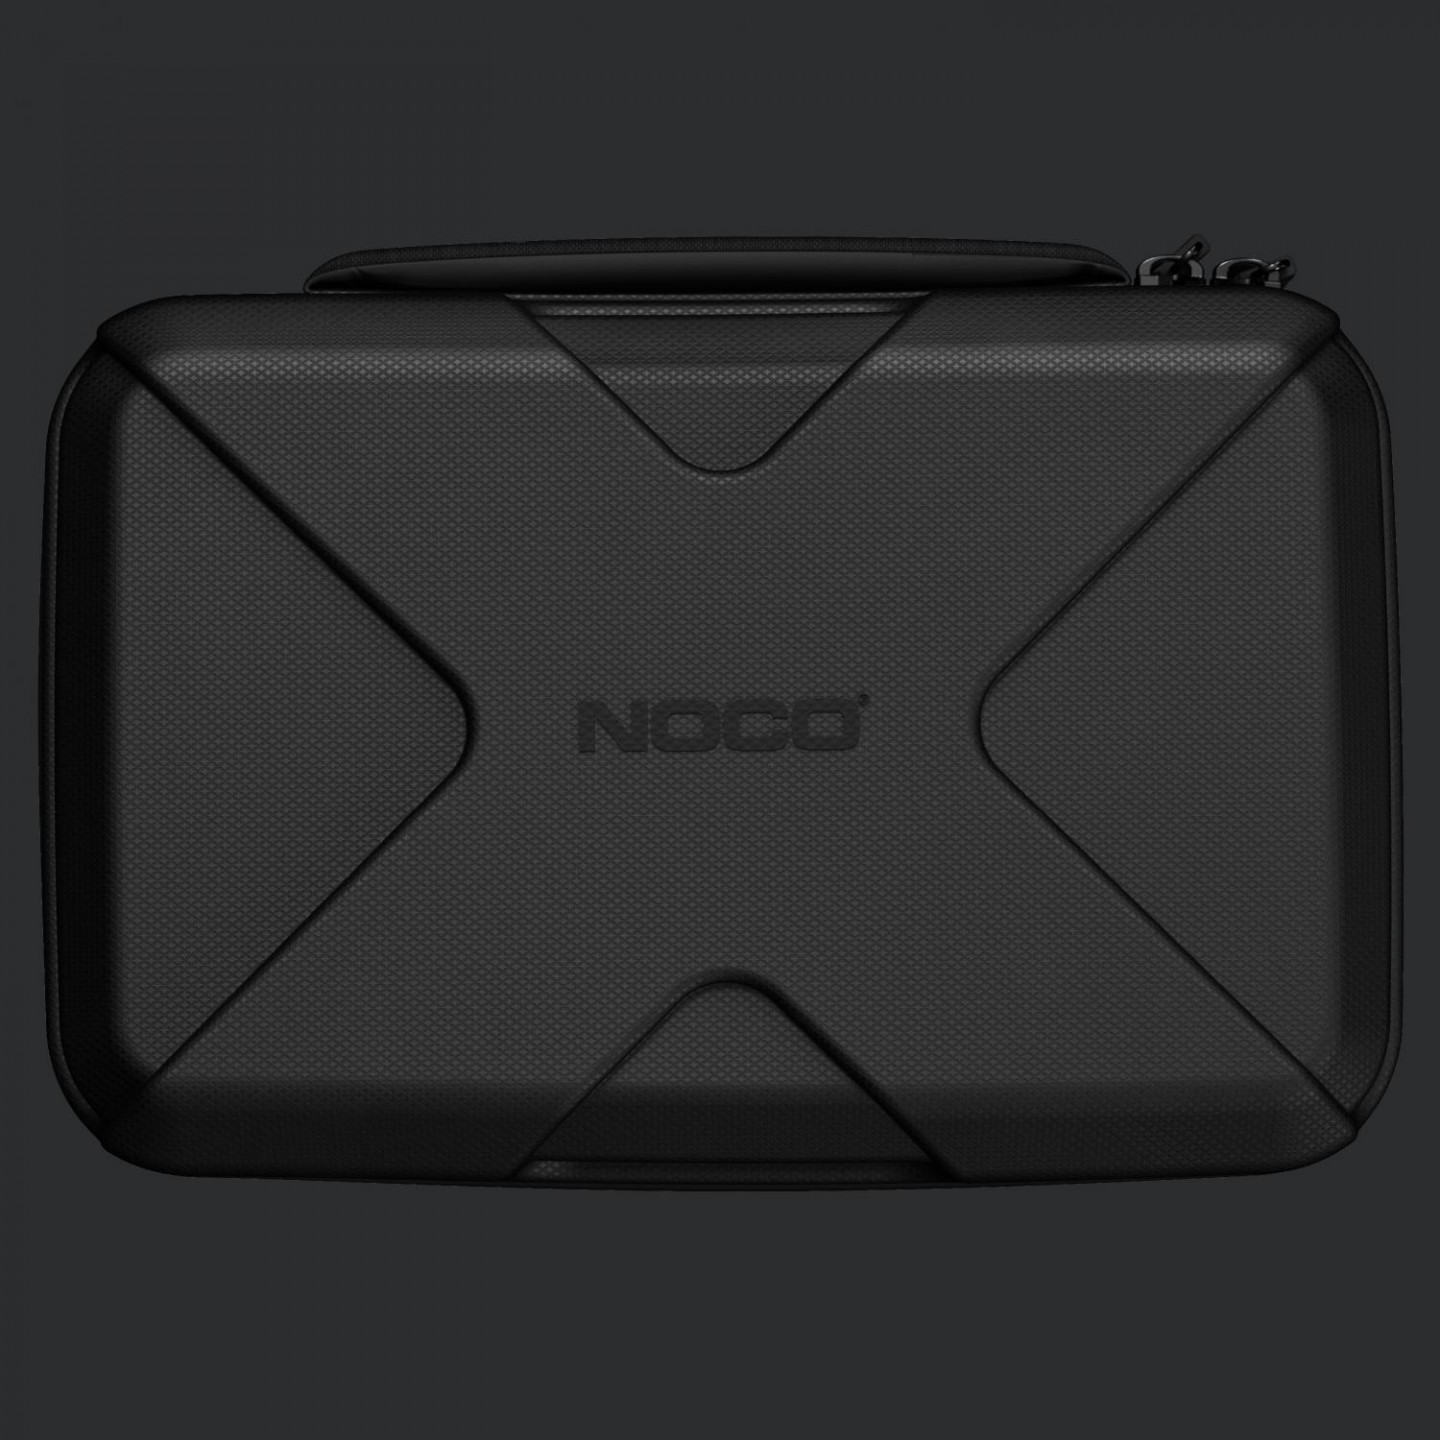 NOCO - Boost Sport & Boost Plus Protective Case - GBC013